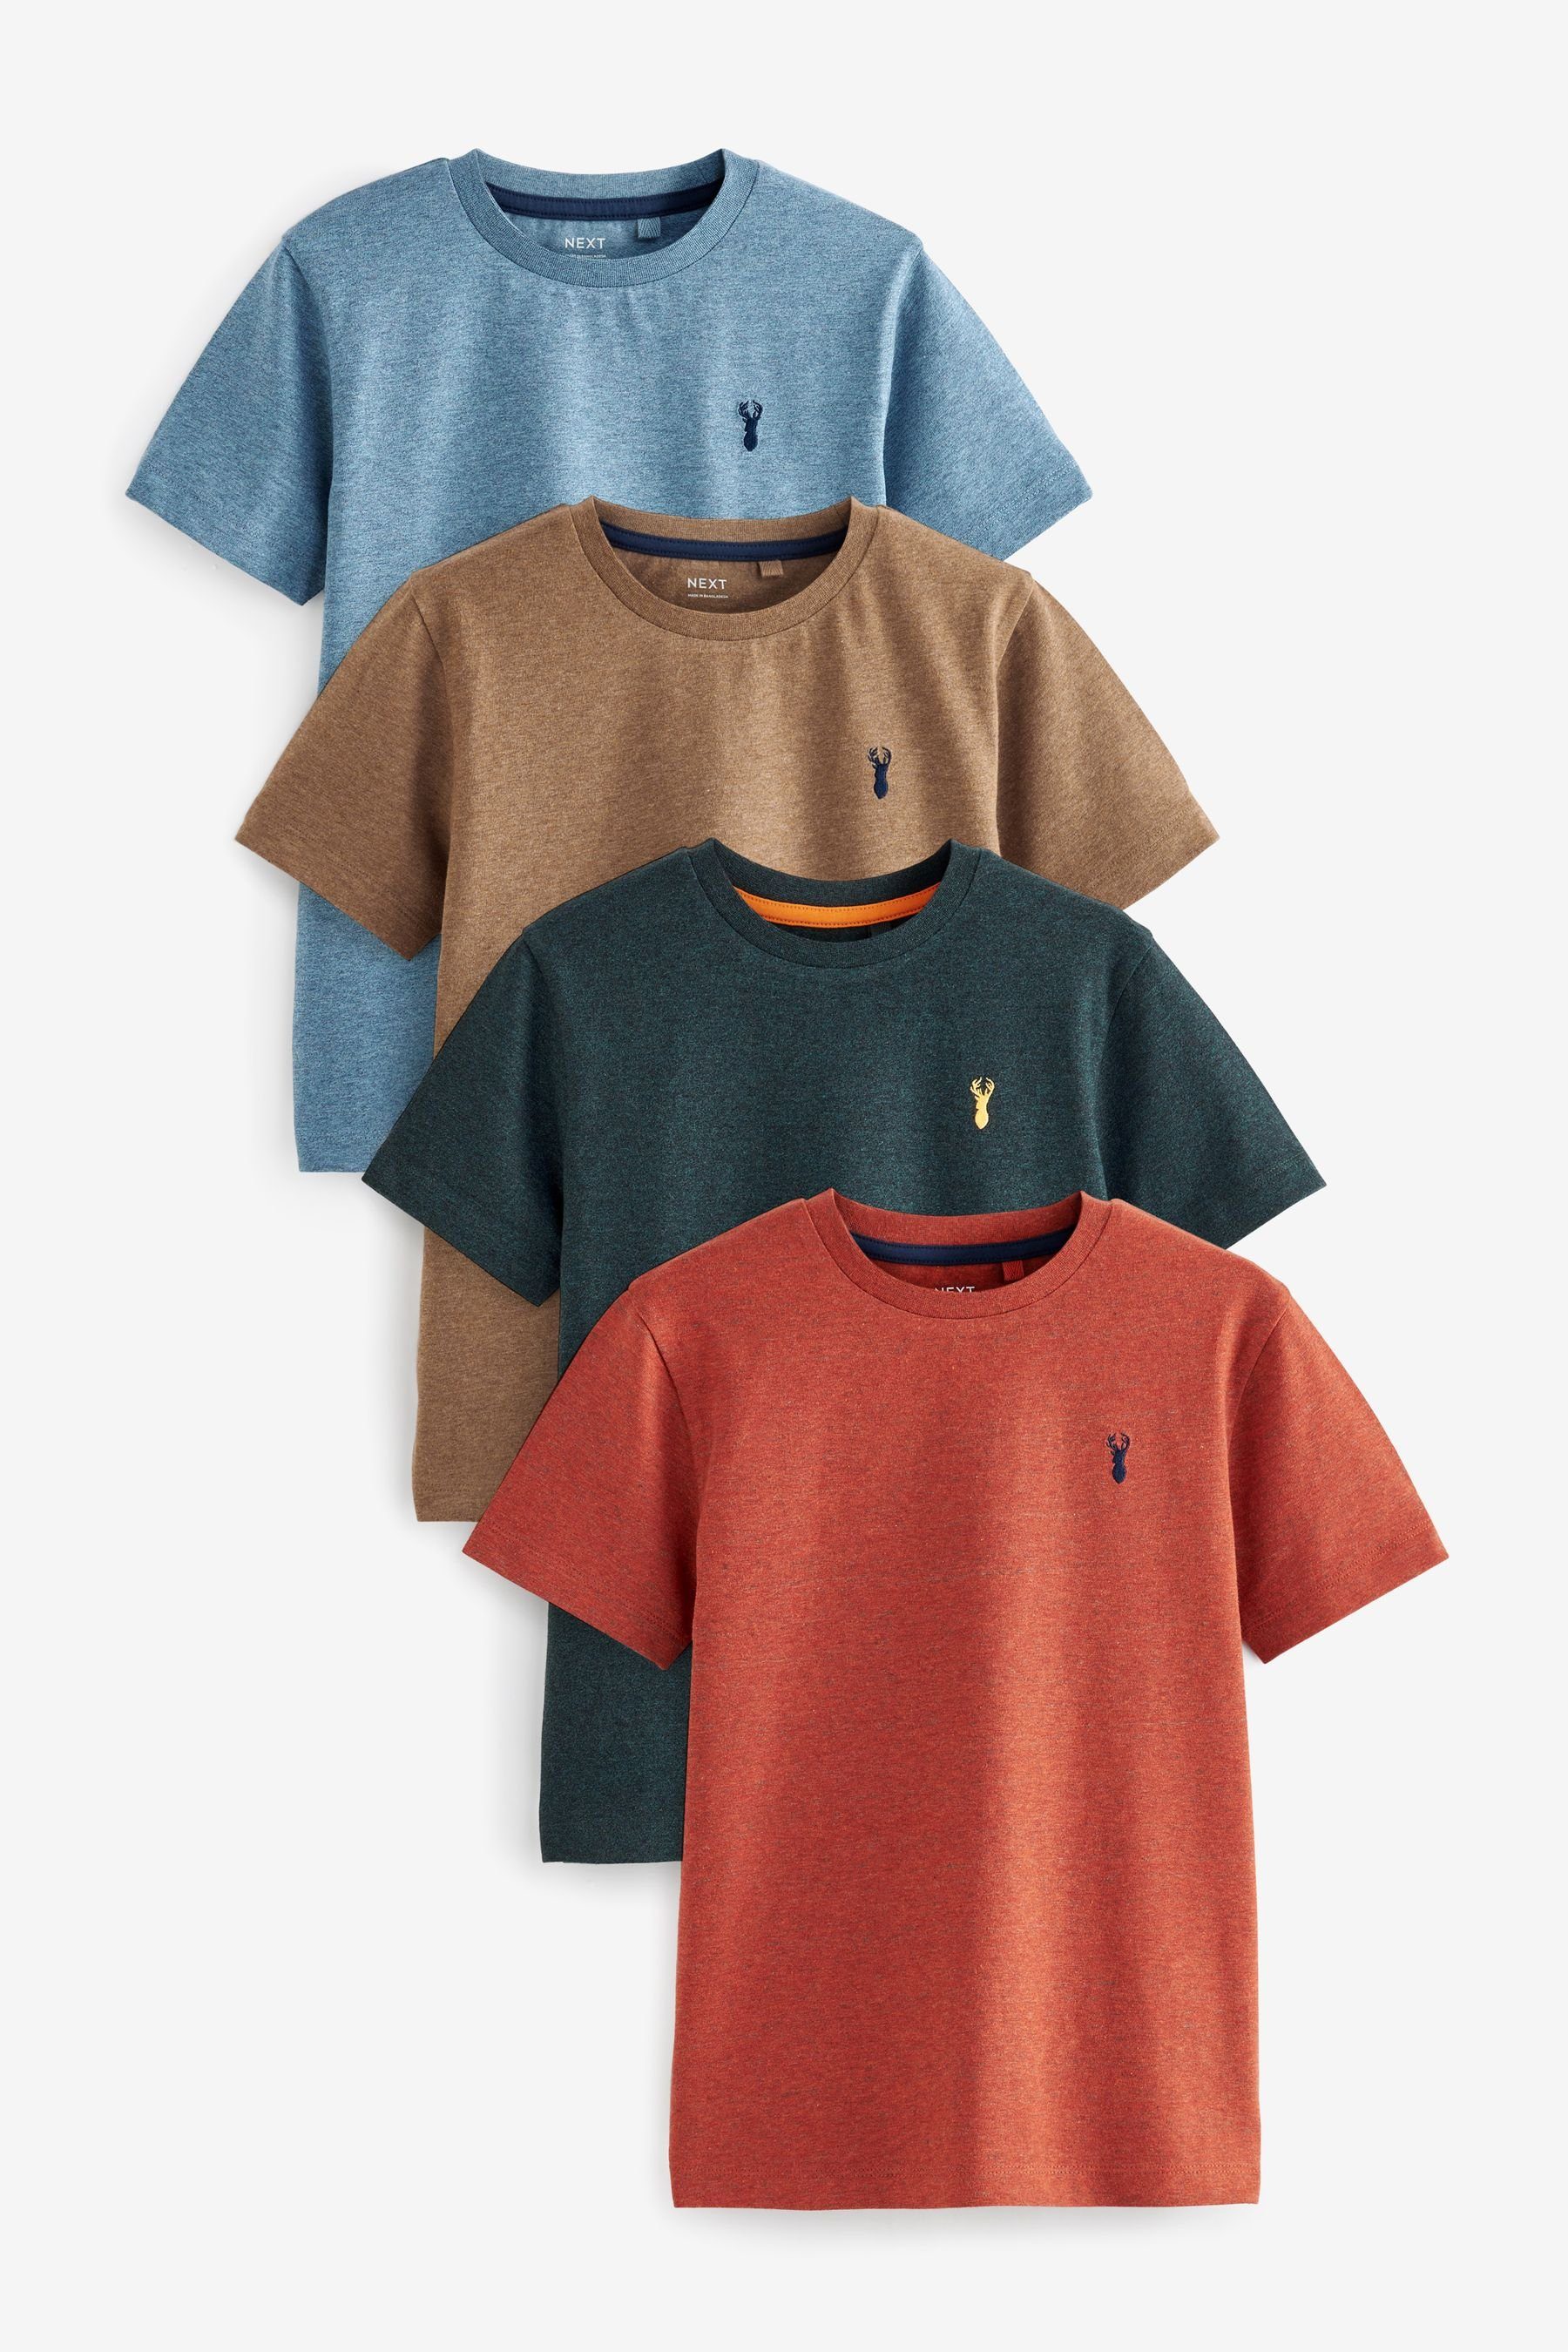 Next T-Shirt 4er-Pack Kurzarm-T-Shirts mit Hirsch-Stickerei (4-tlg) Orange/Green/Blue Textured